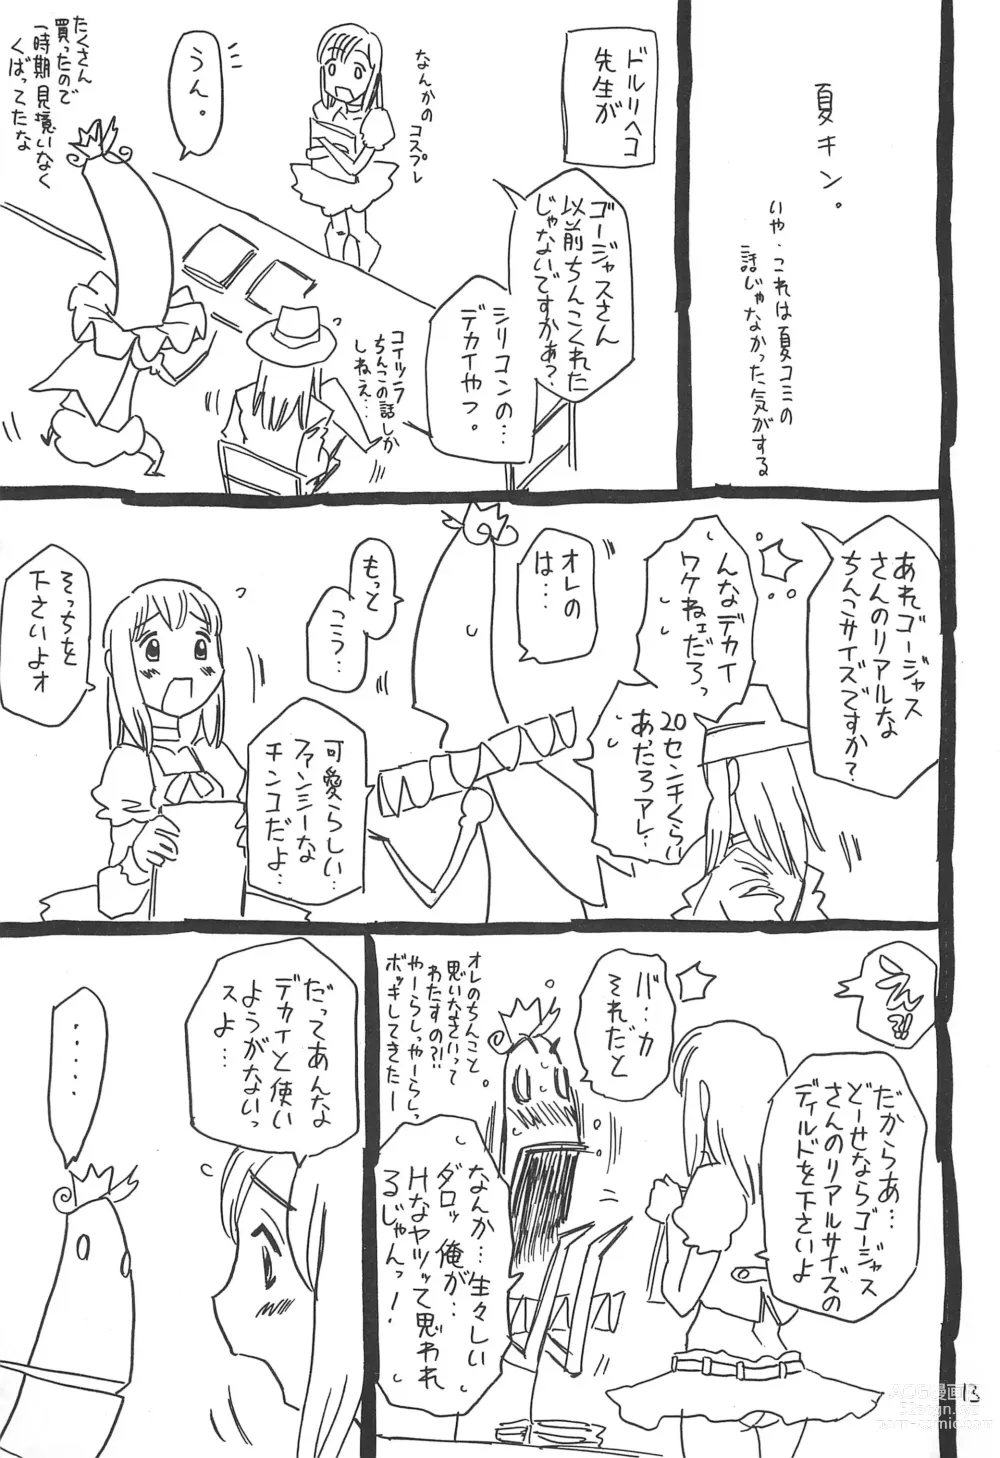 Page 13 of doujinshi Hyakka Shokkou Atopink